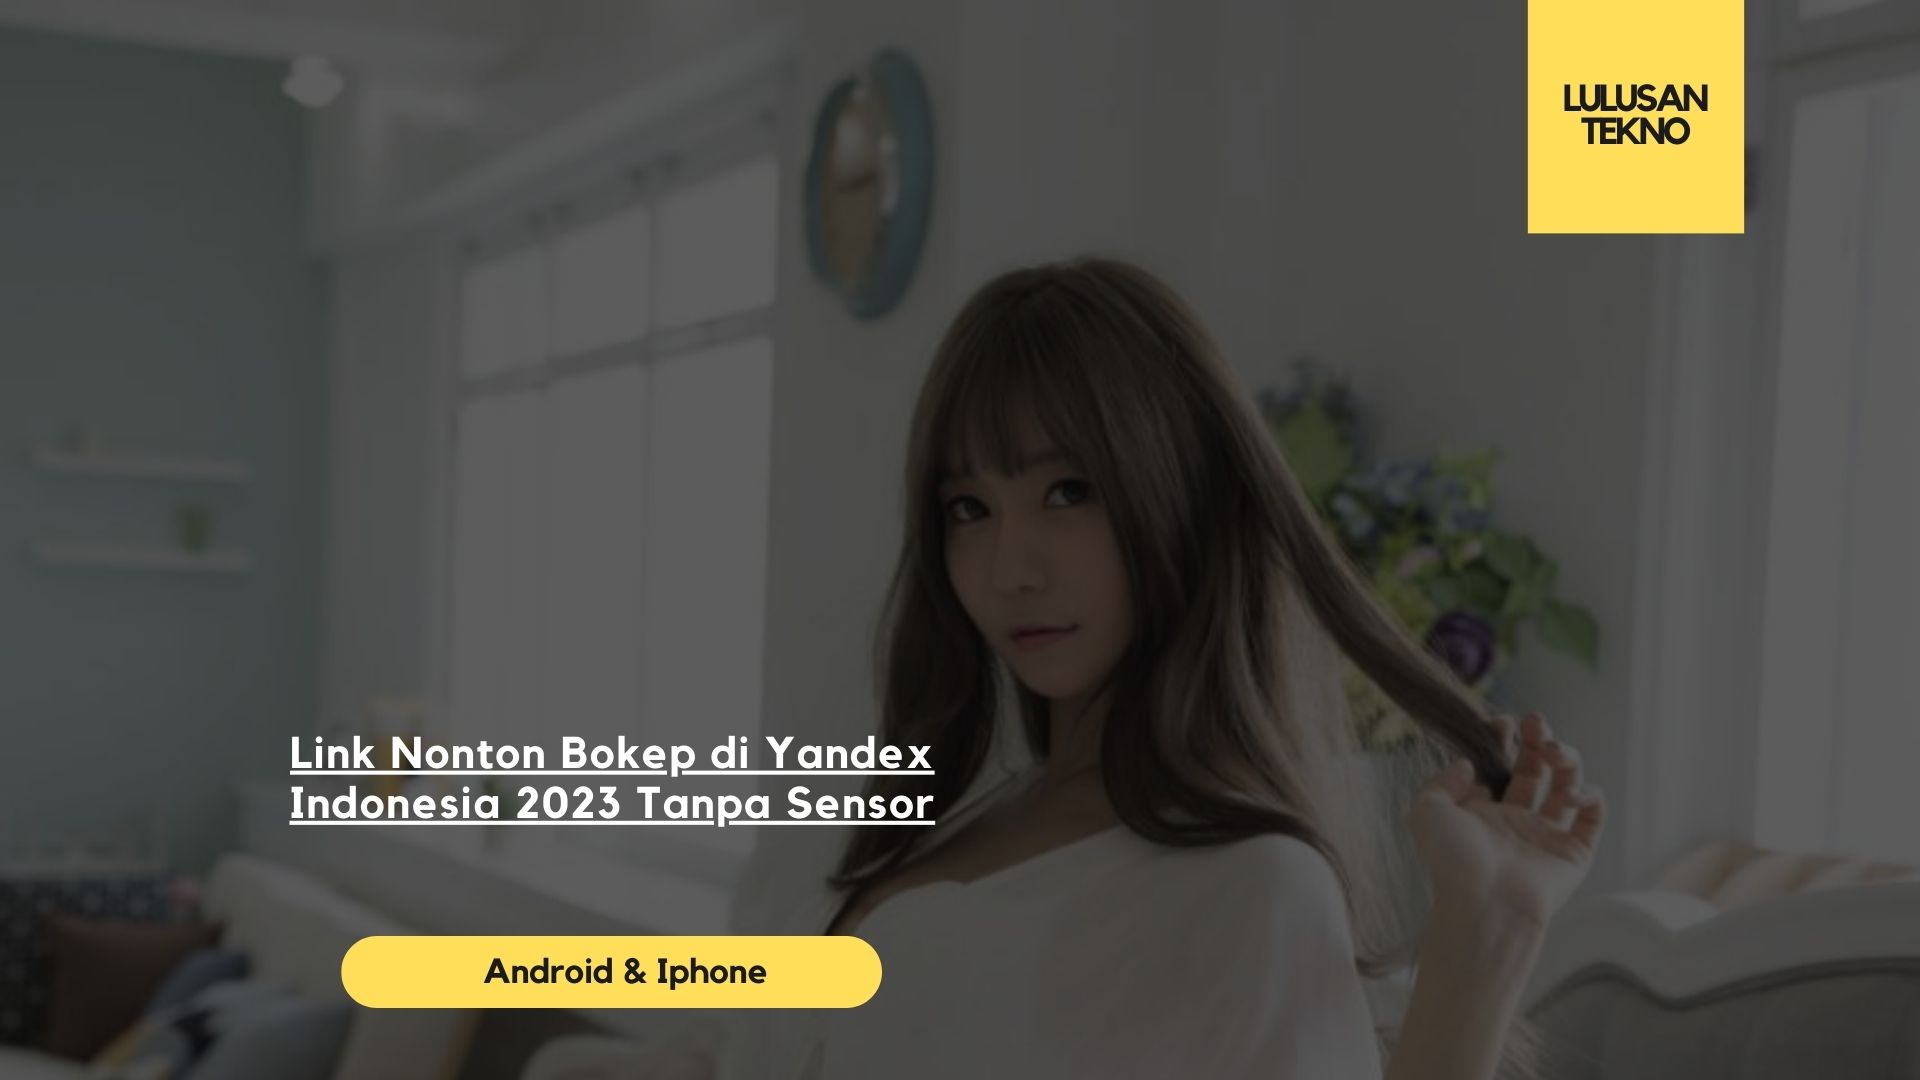 Link Nonton Bokep di Yandex Indonesia 2023 Tanpa Sensor